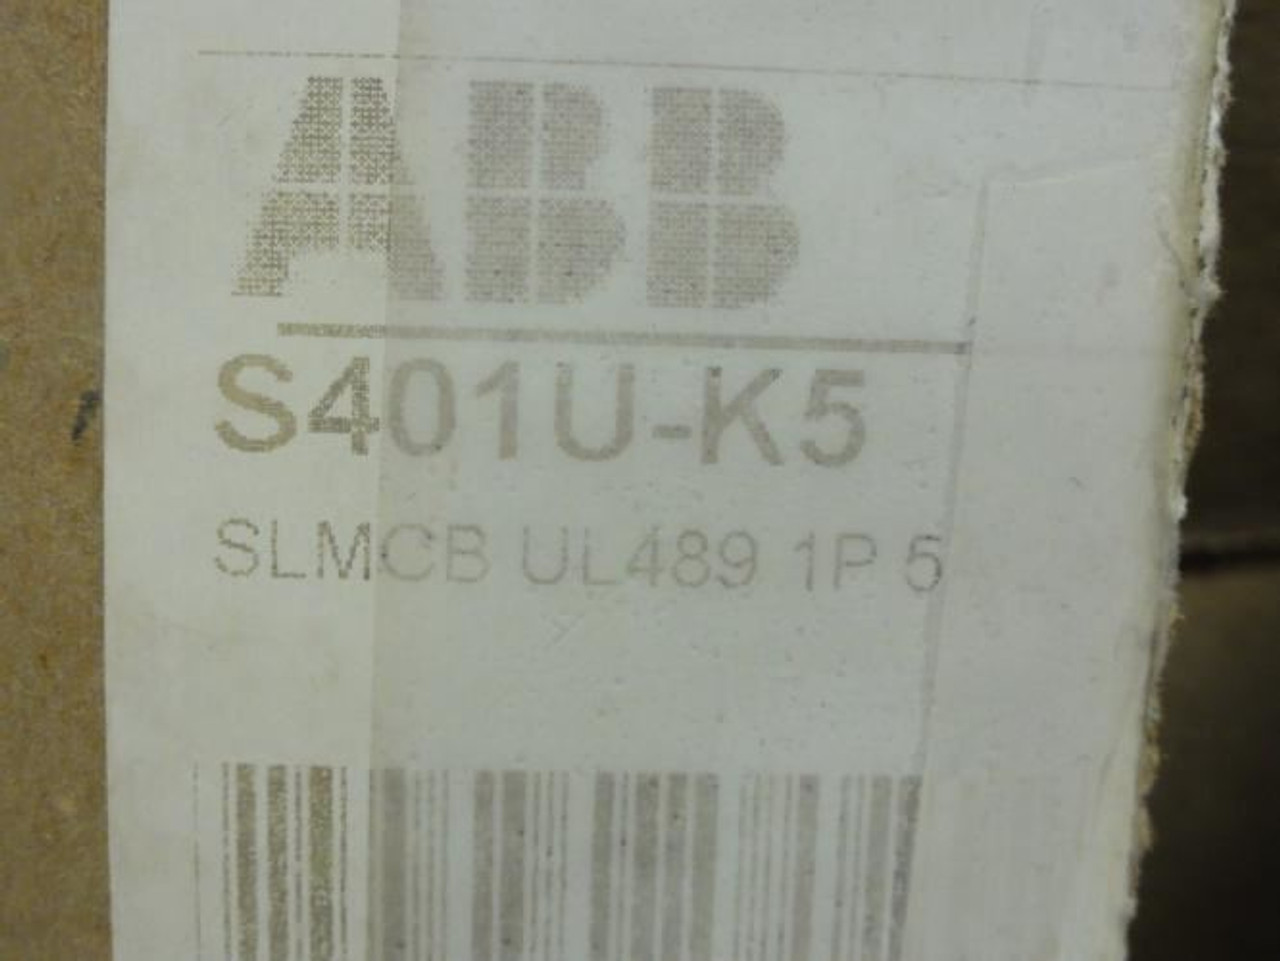 ABB S401U-K5; Mini-Circuit Breaker; 5A; 1 Pole; 240V